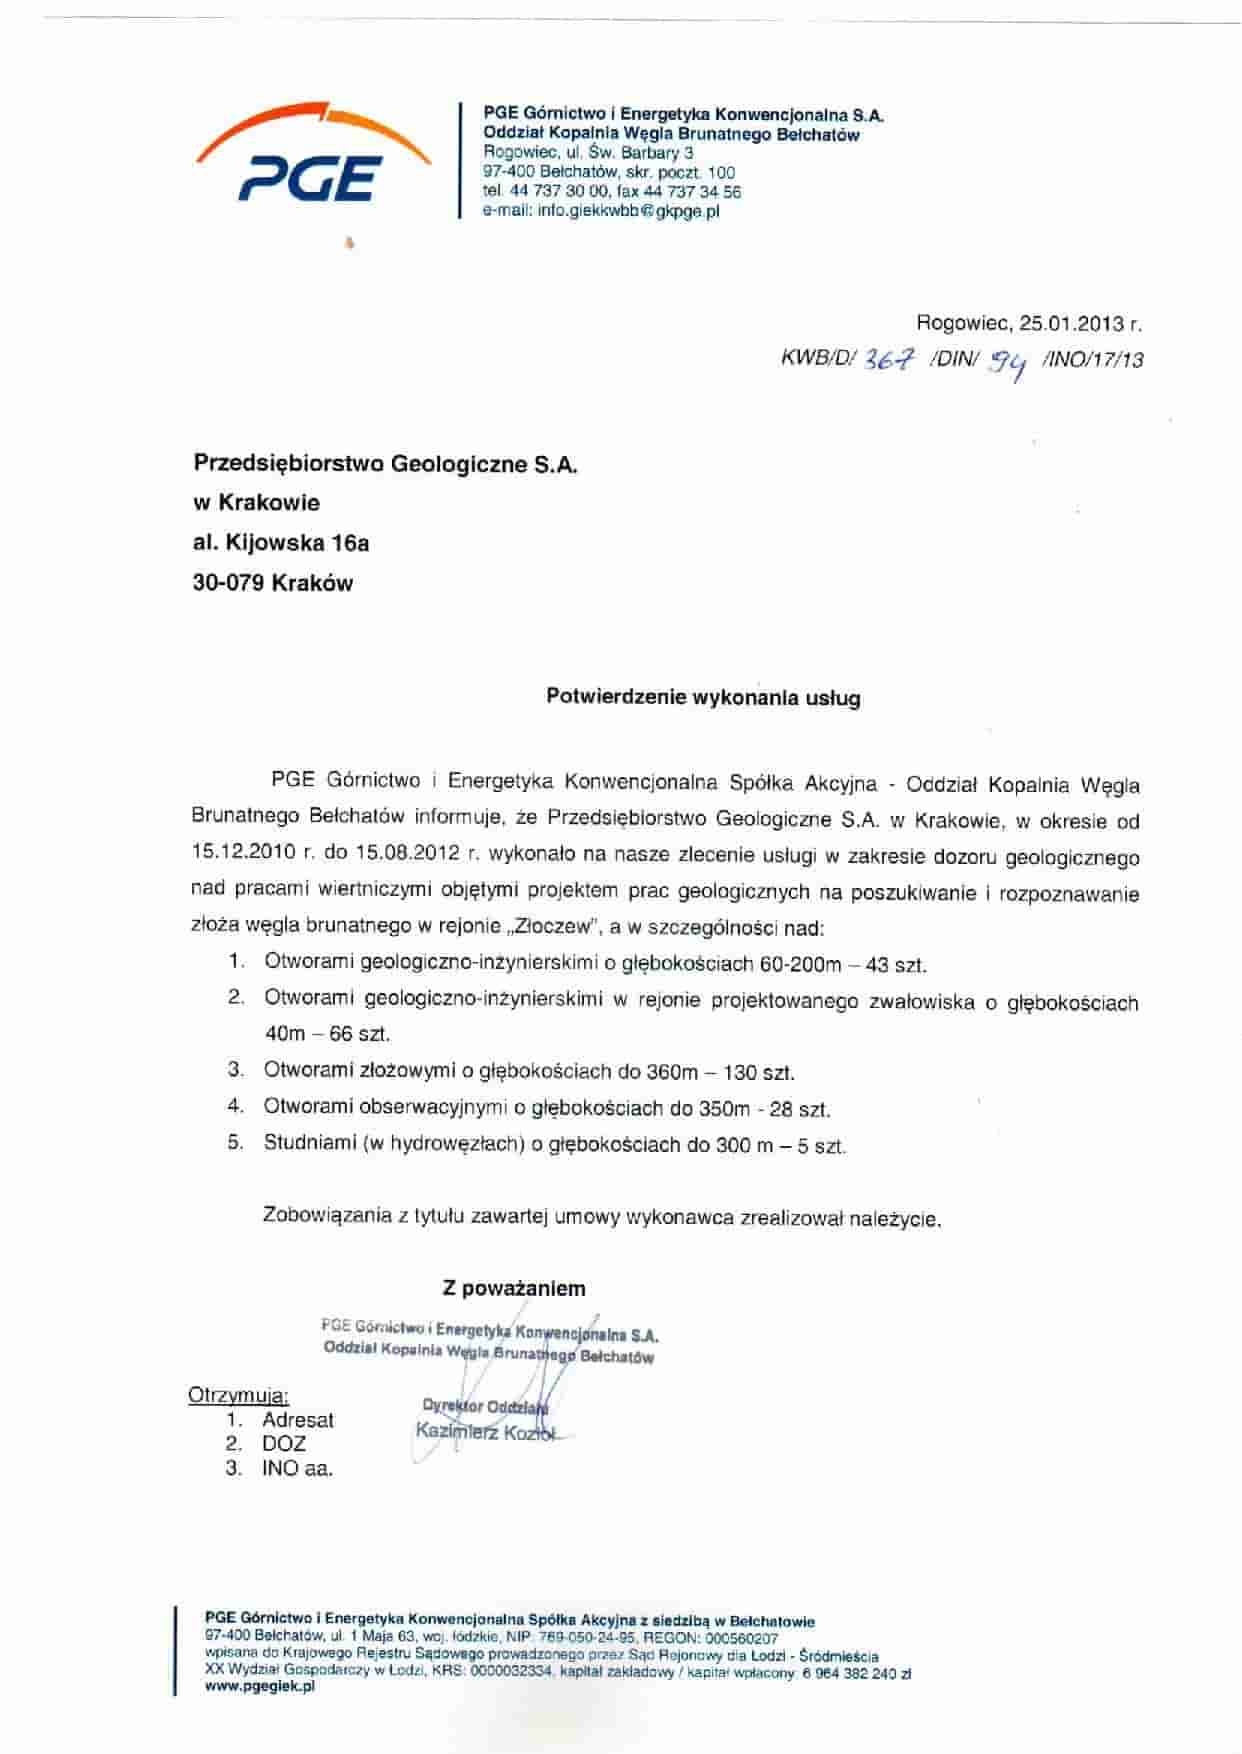 PGE Górnictwo i Energetyka Konwencjonalna S.A. Oddział KWB Bełchatów